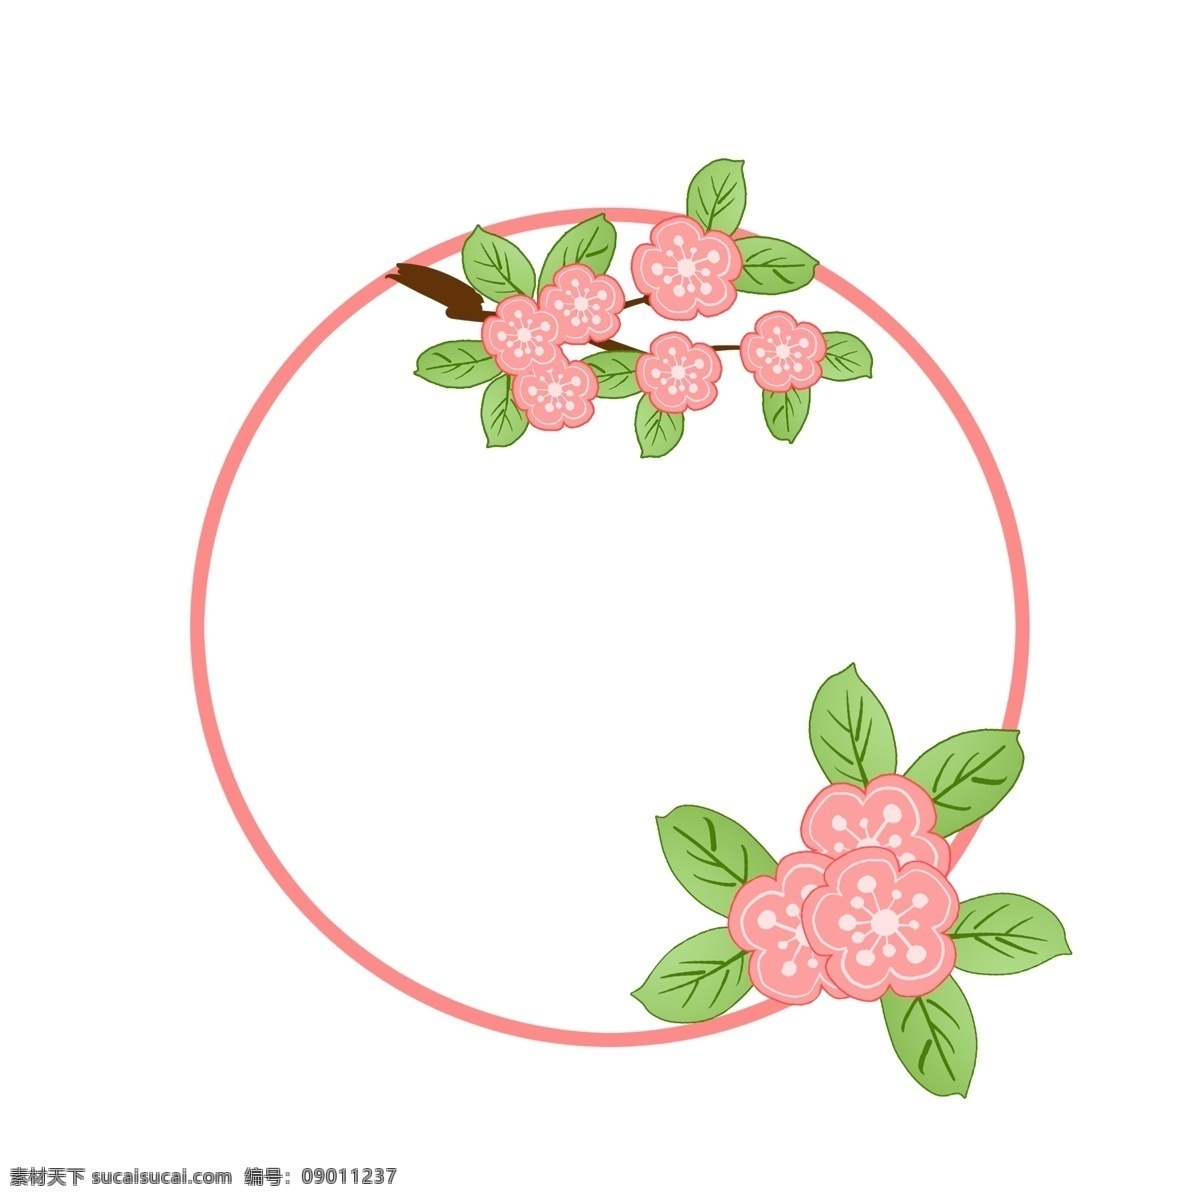 圆形 春季 边框 插画 红色的花朵 卡通插画 春天 春季边框 春季框 框架 圆形的边框 绽放的花朵